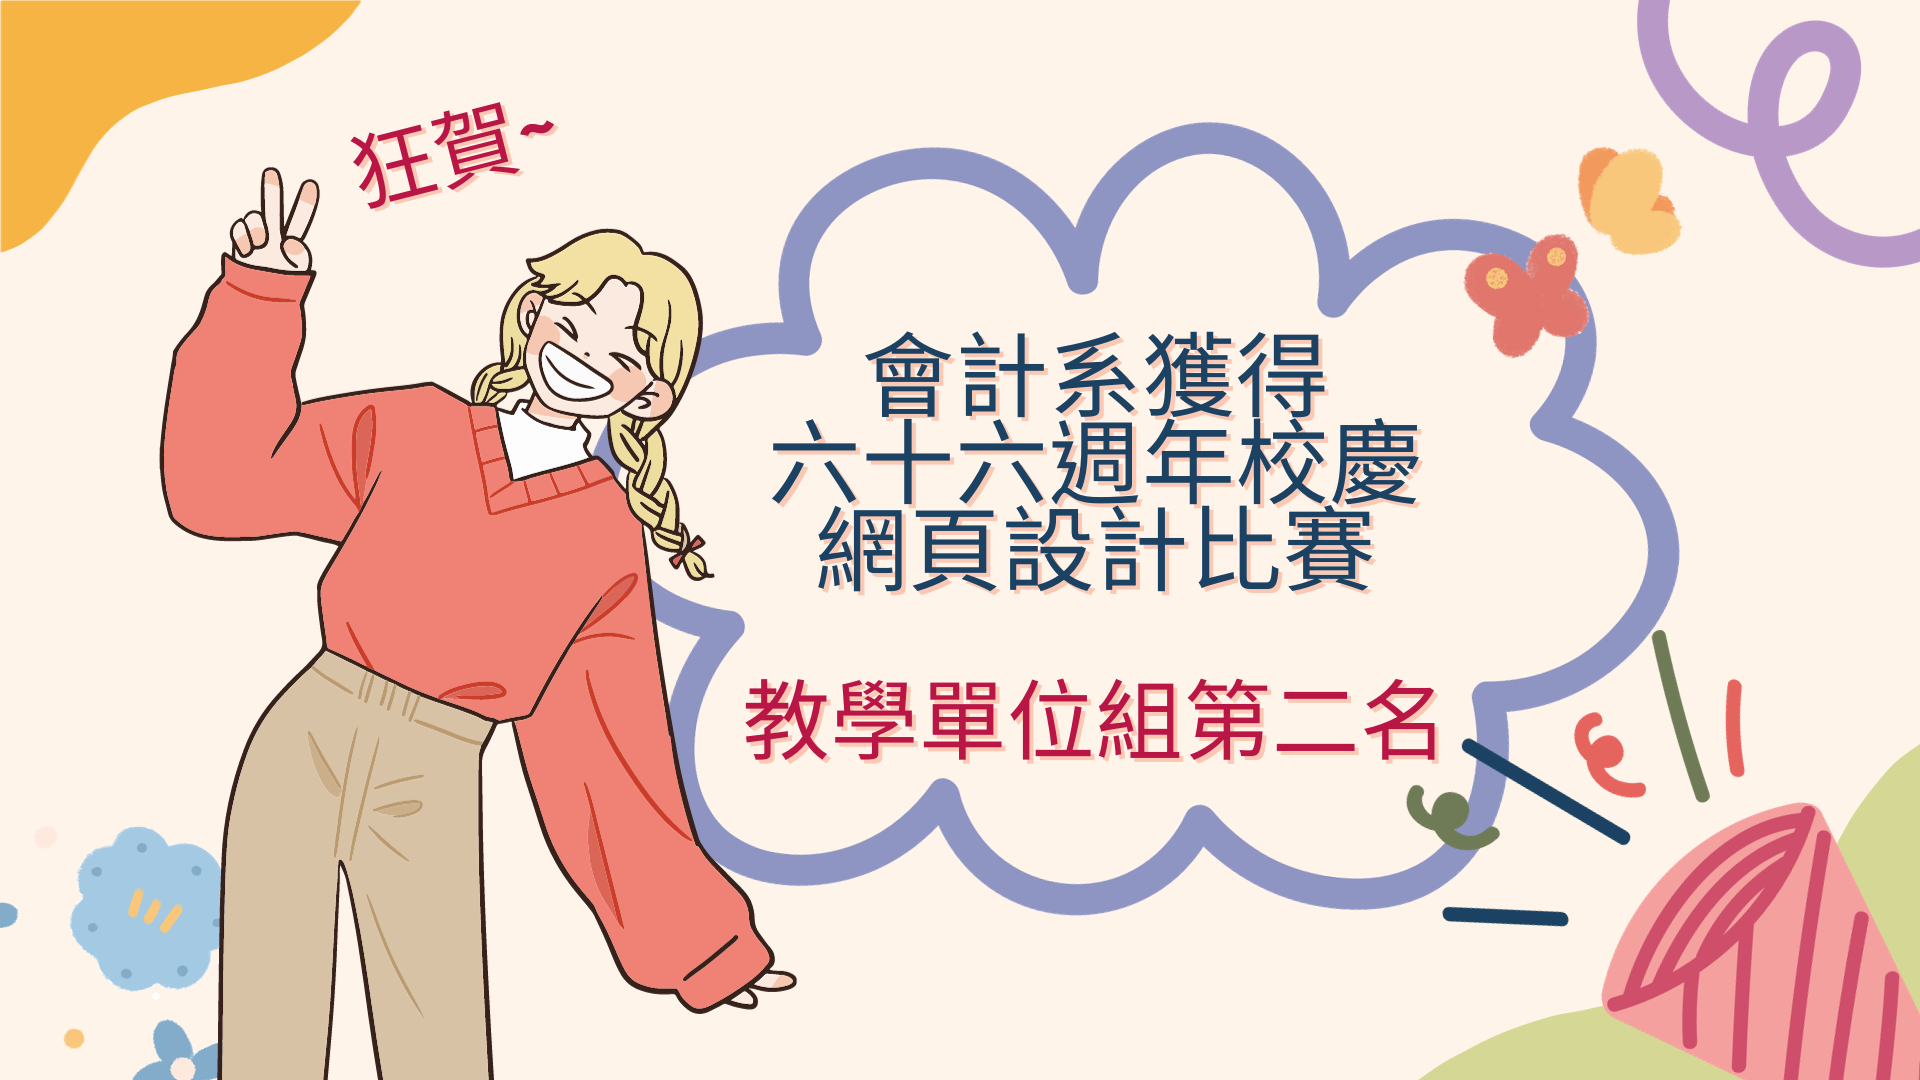 Featured image for “狂賀！會計系獲得六十六周年校慶網頁設計比賽－教學單位組第二名！”